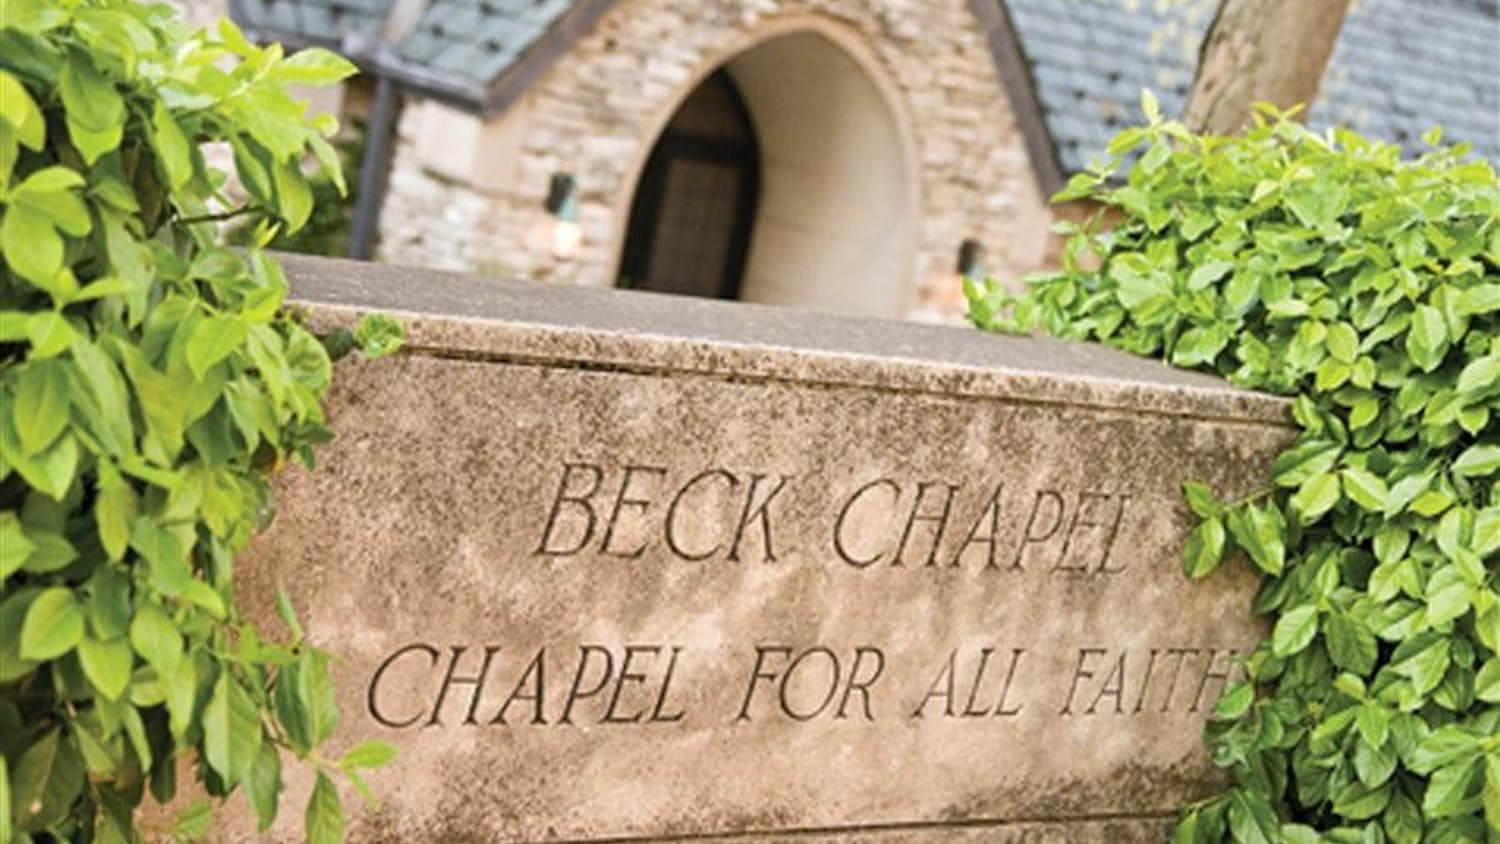 Beck Chapel